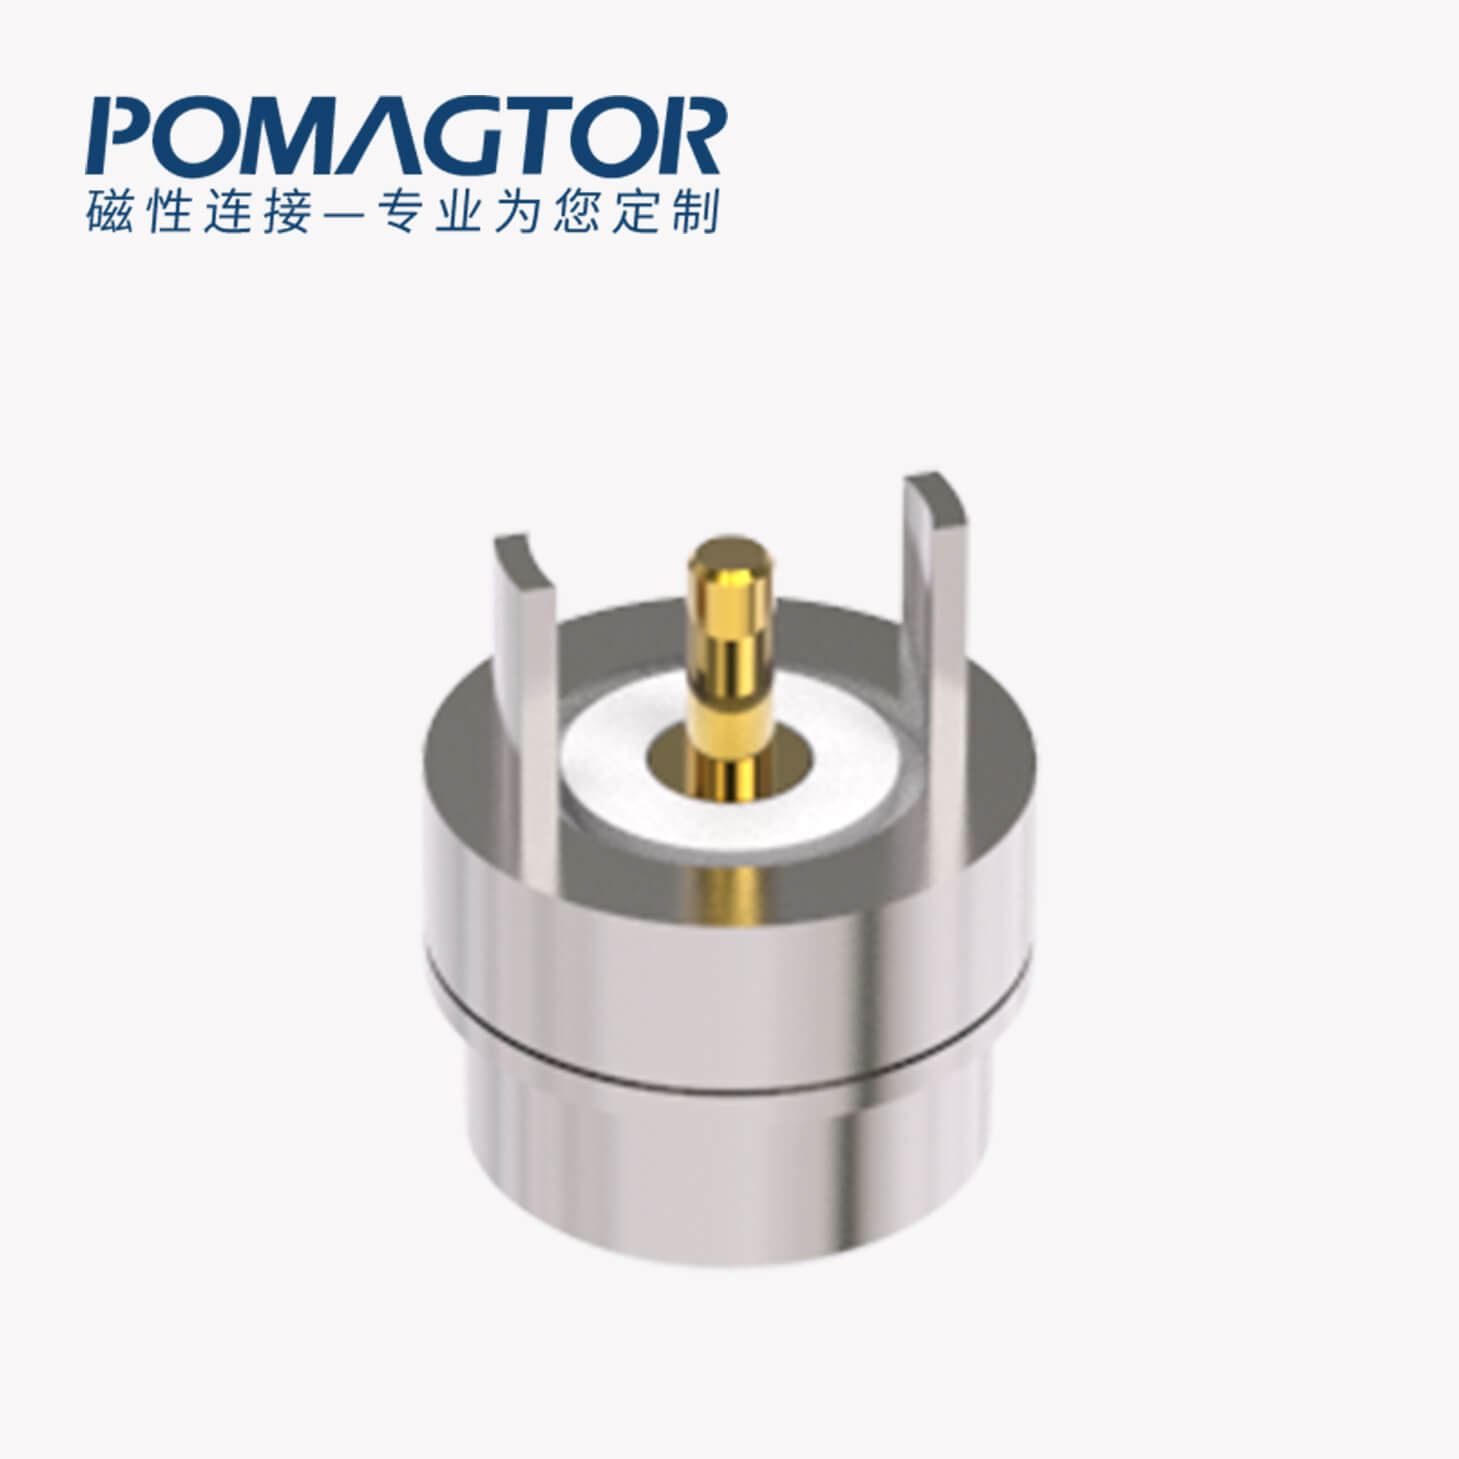 磁吸连接器 圆形磁性系列：2PIN，电镀黄铜Au3u，电压5V，电流1.5A，按压行程0.8mm:60gfMax，弹力10000次+，工作温度-30°~85°